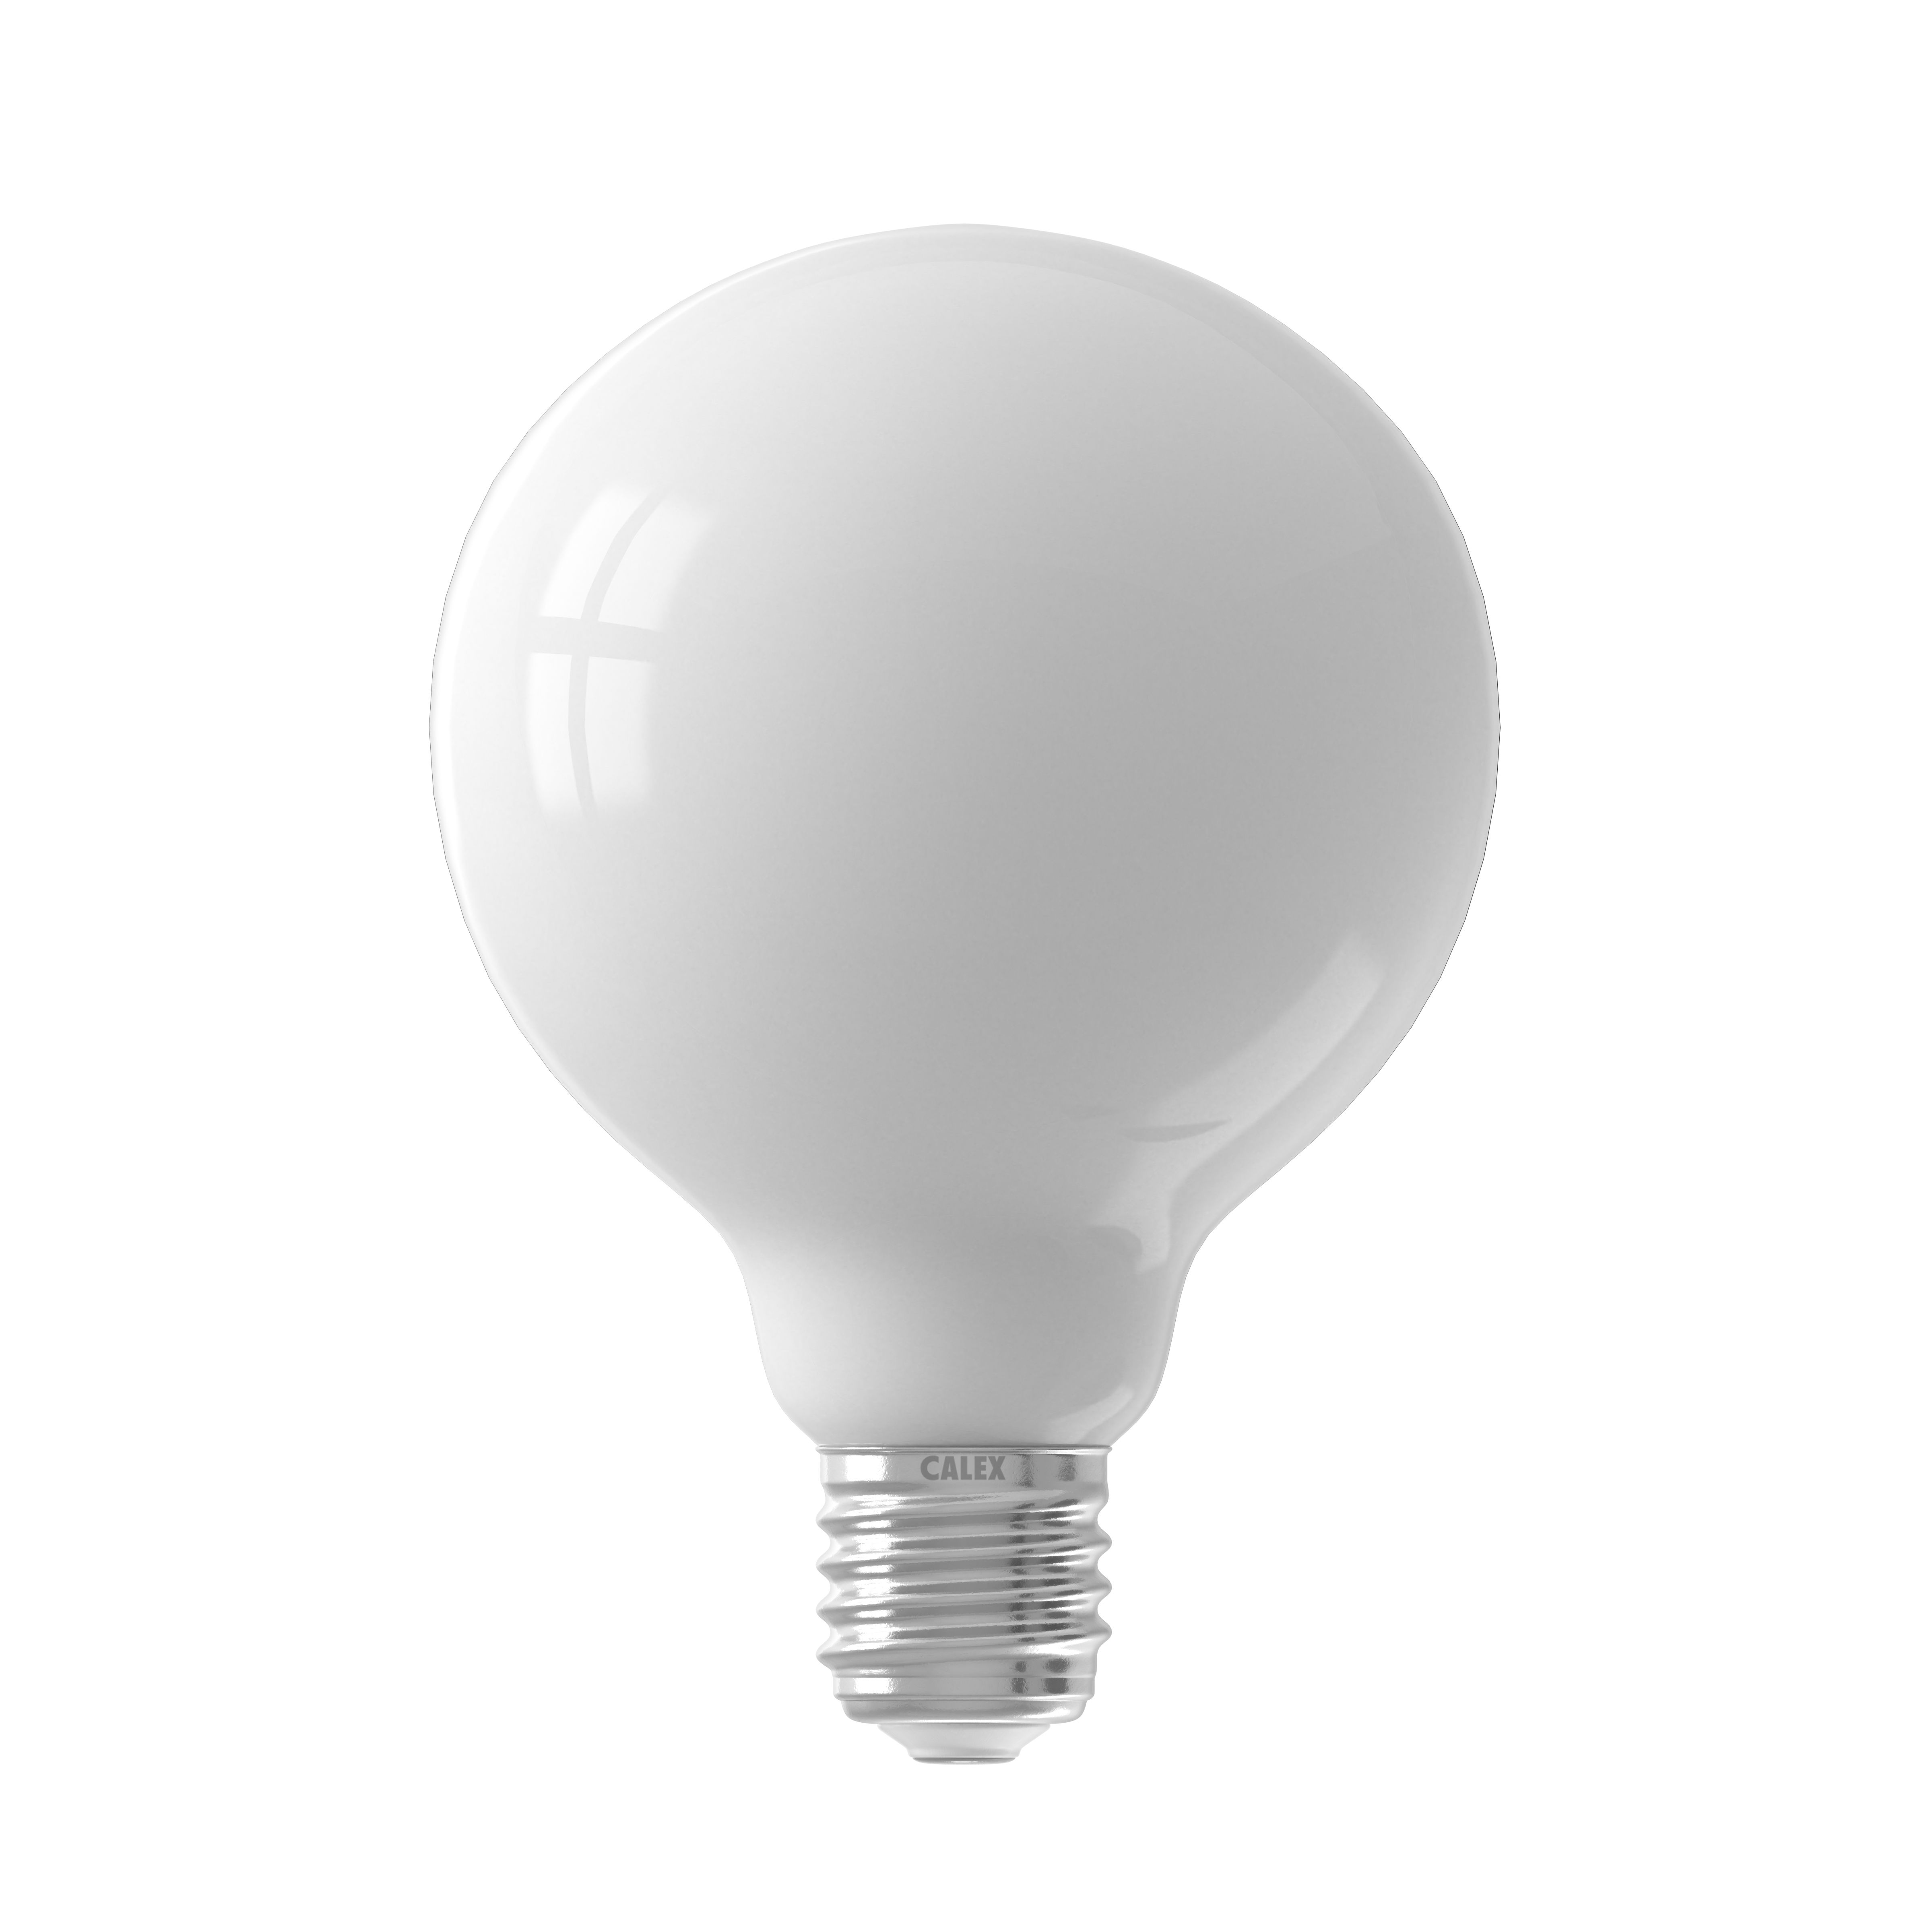 Ampoule led blanche ou transparente E27 PAR30 Illuminando